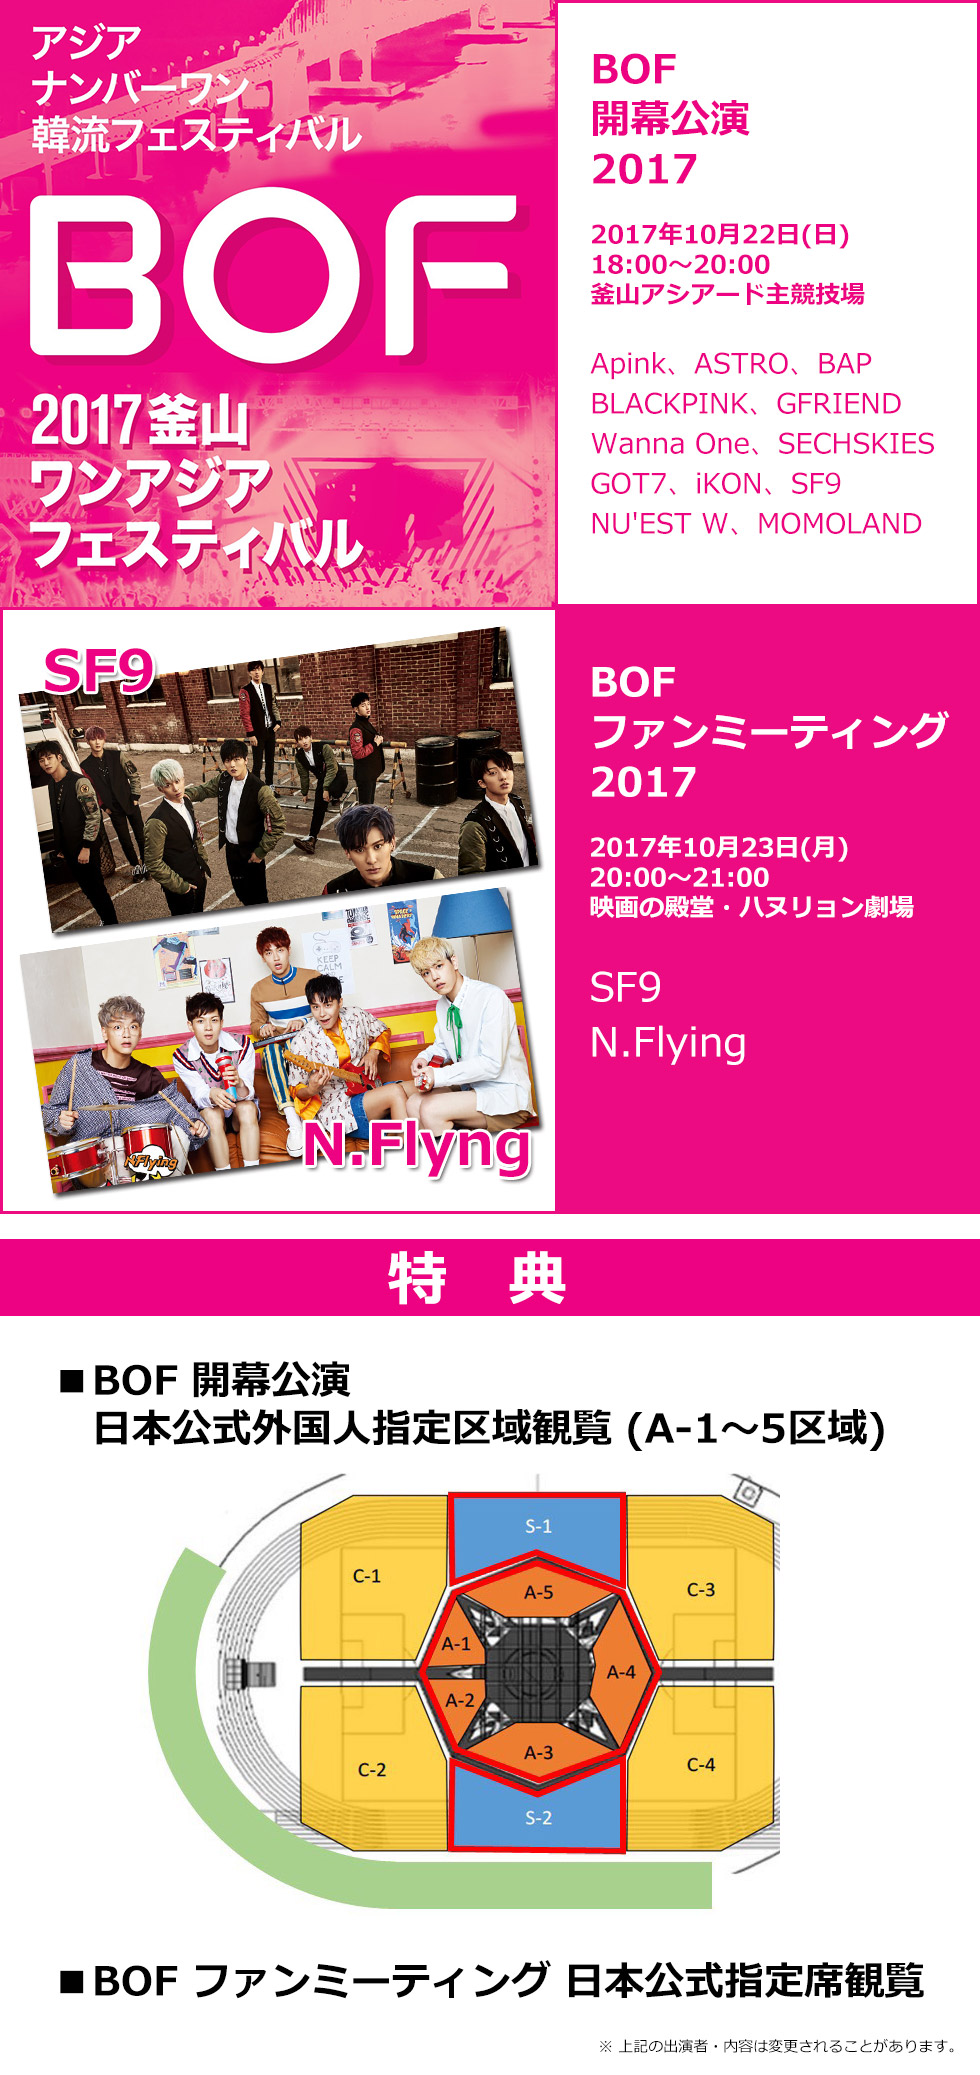 【日本公式】BOF 開幕公演 2017 & BOF ファンミーティング 2017